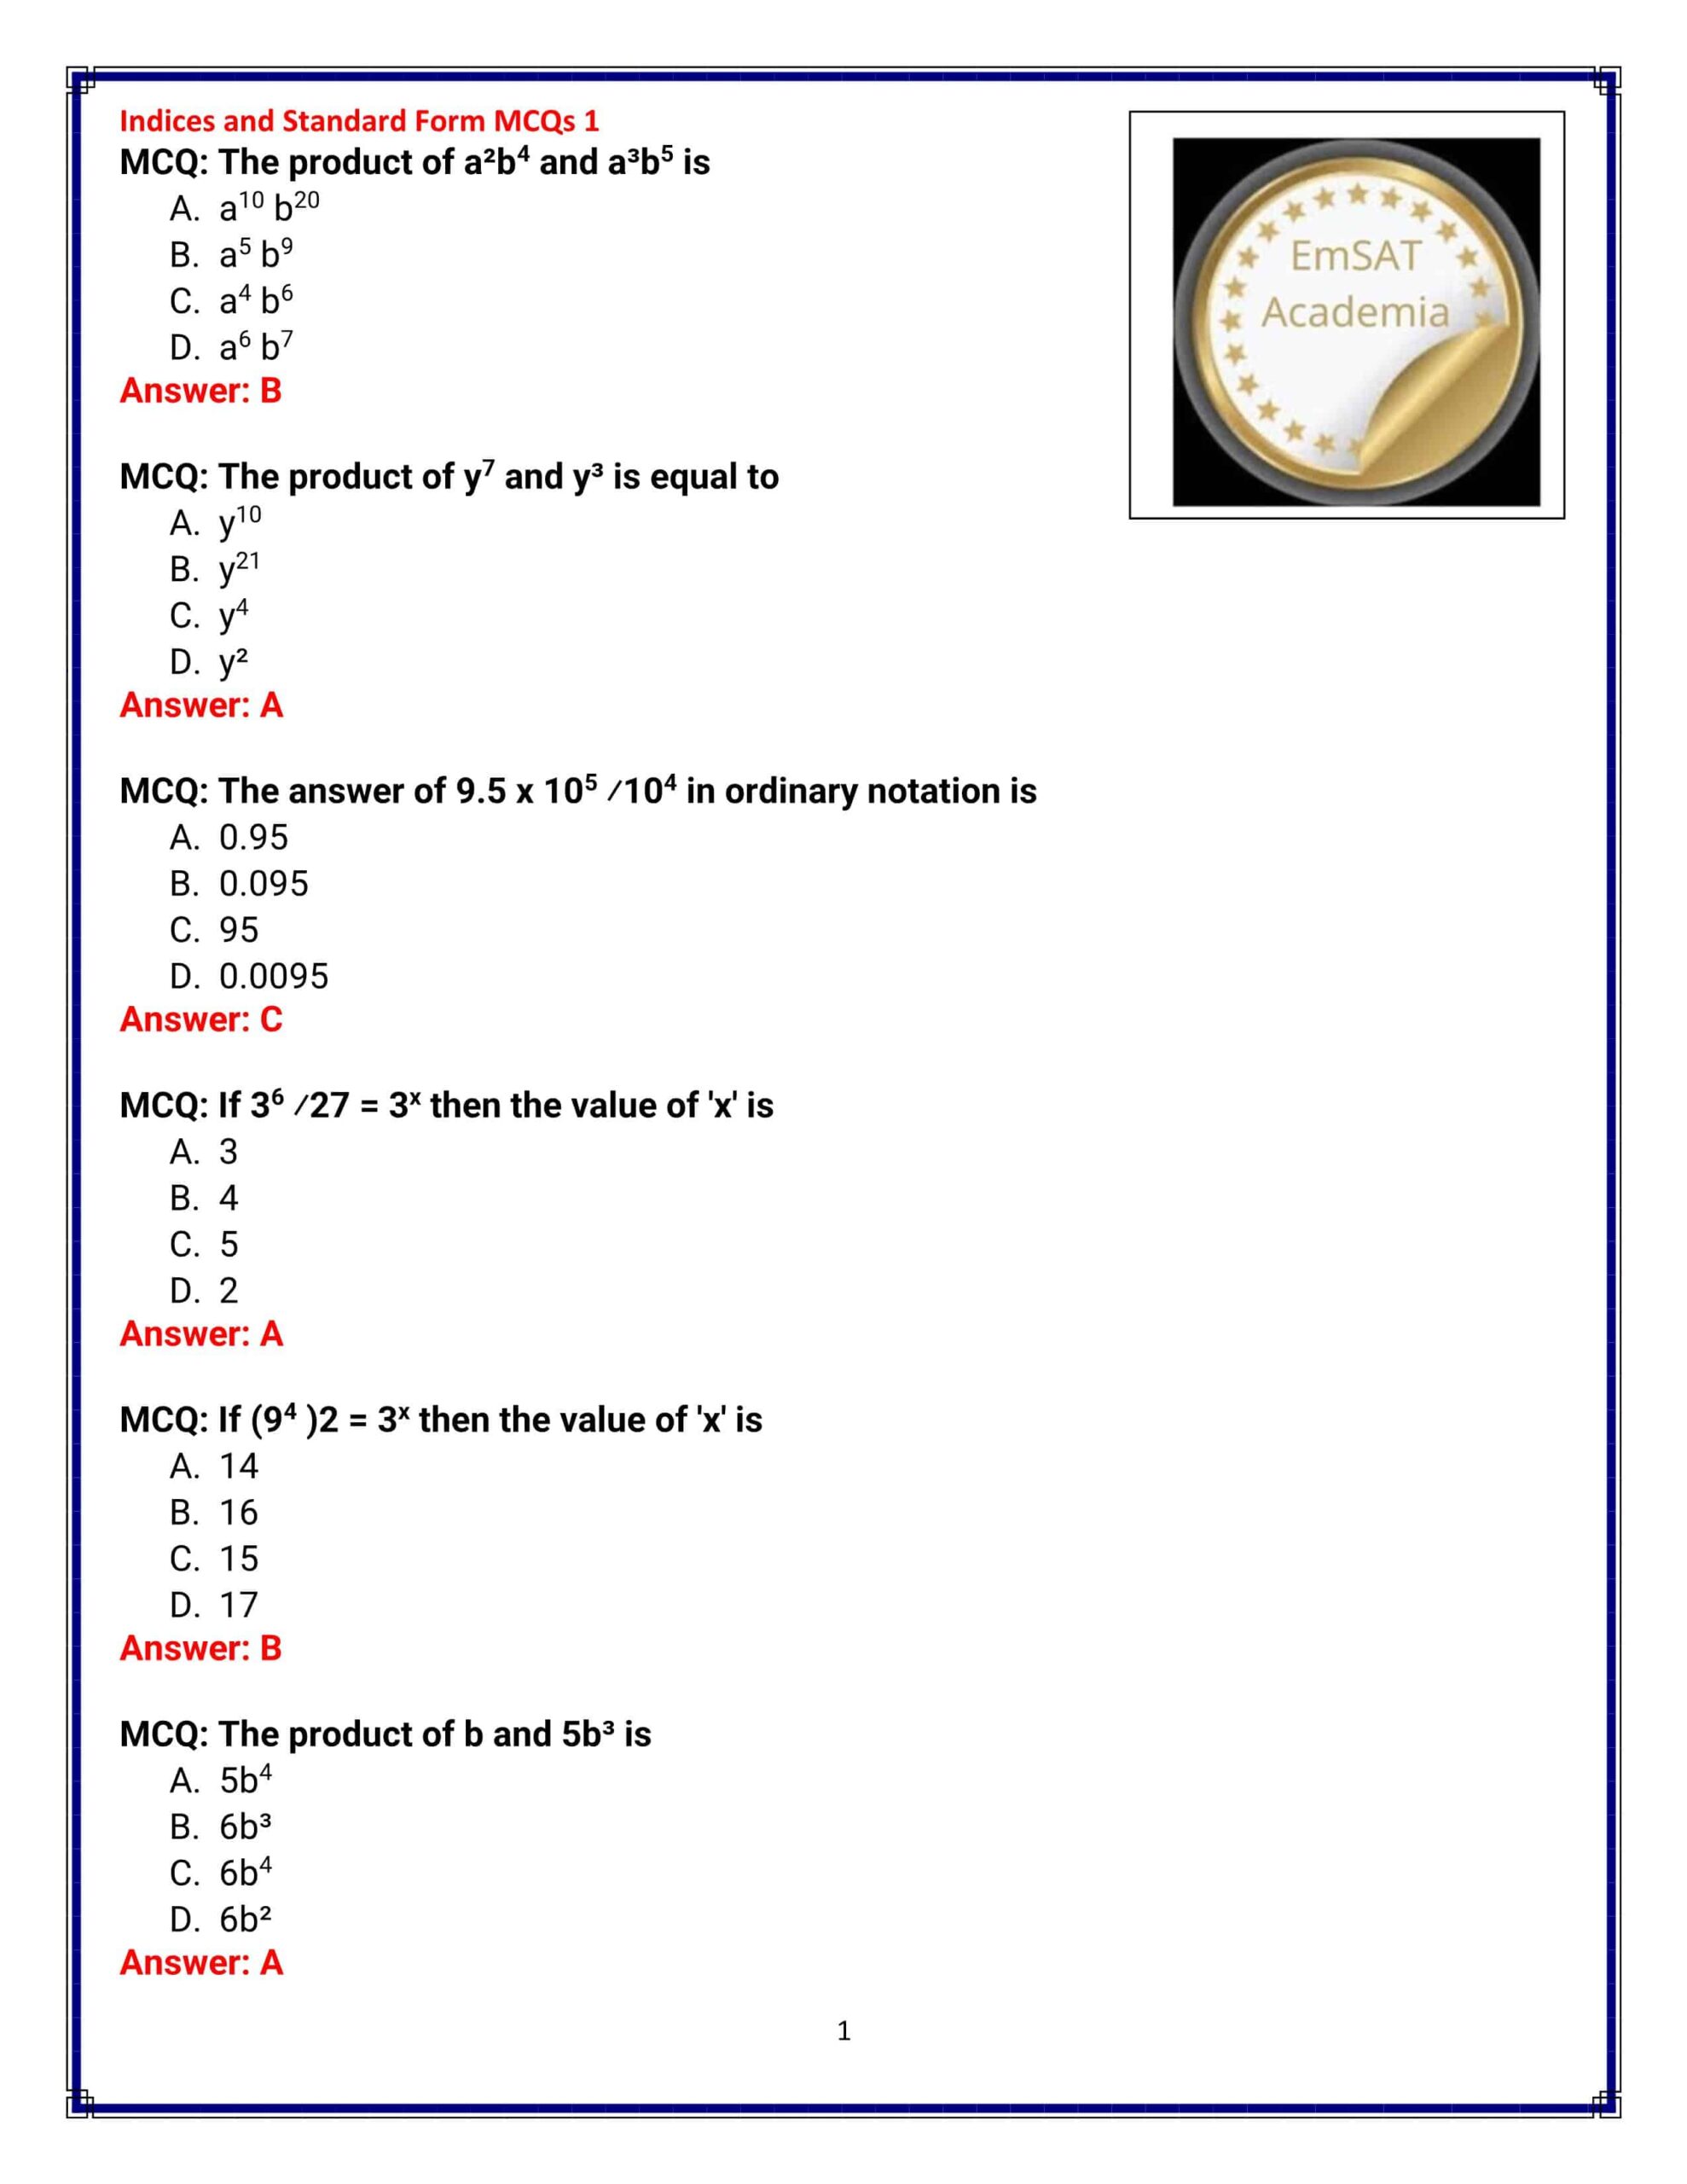 حل أوراق عمل Indices and Standard Form الرياضيات المتكاملة الصف الثاني عشر